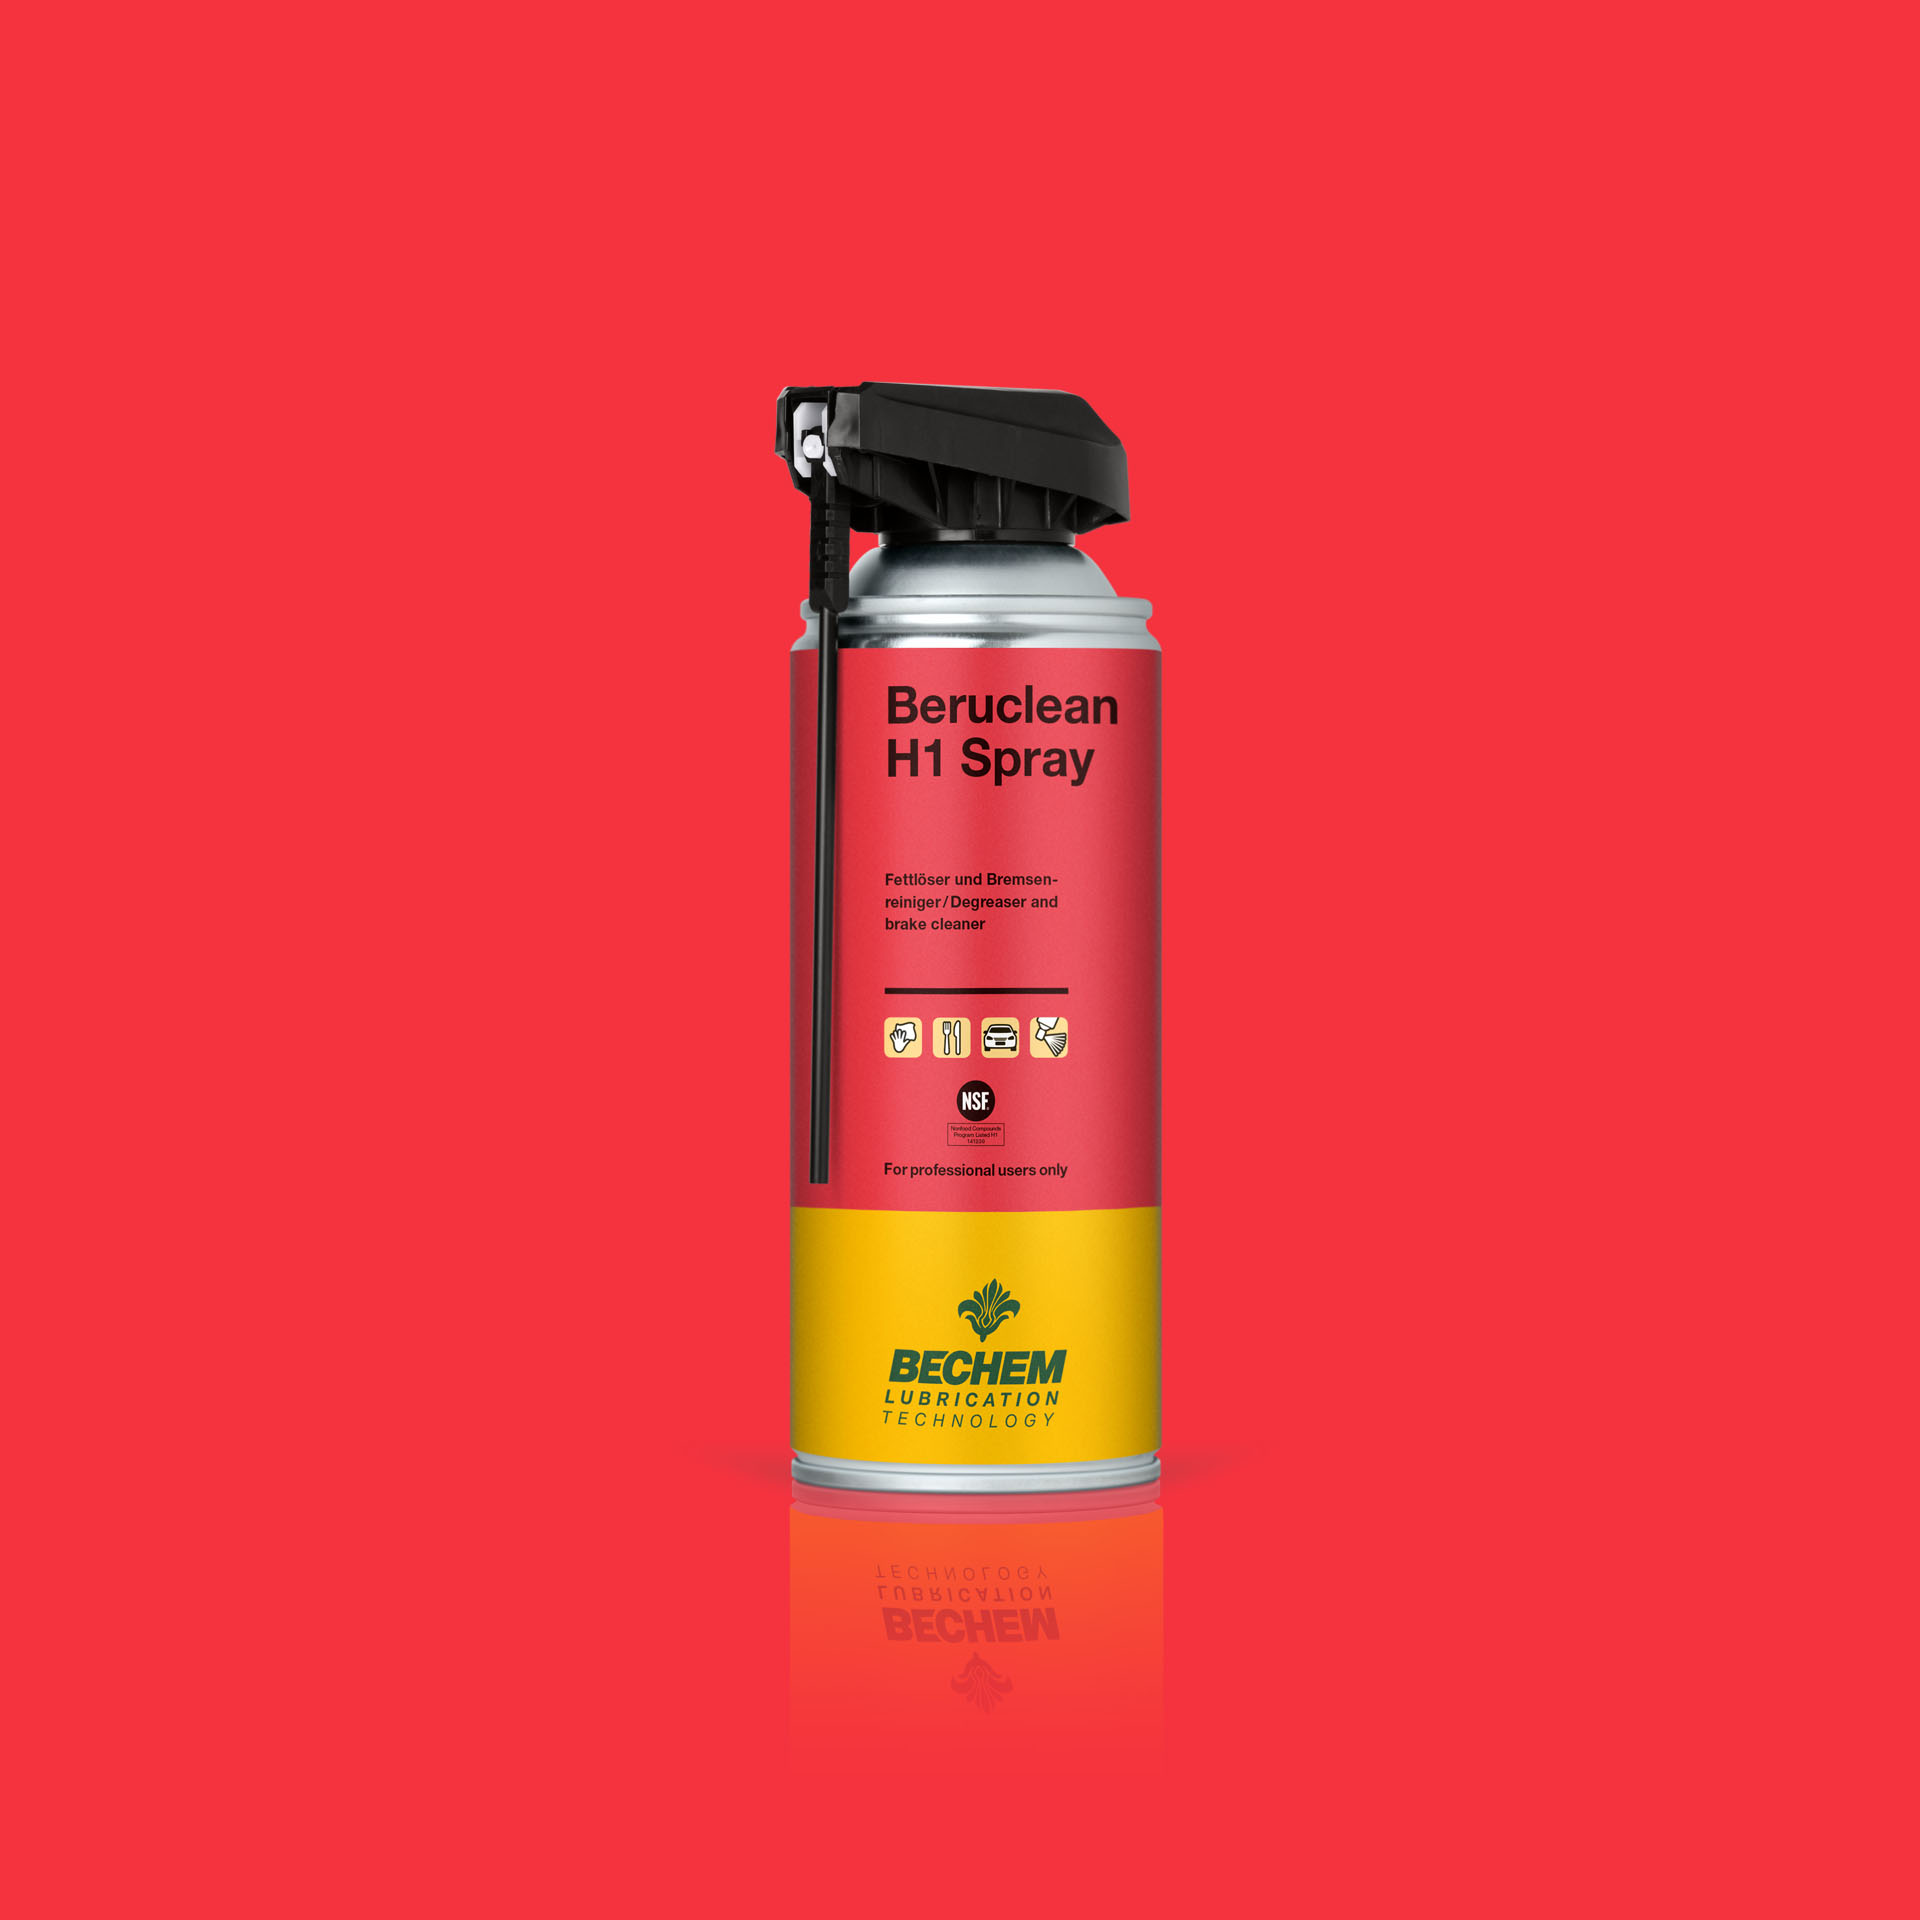 Beruclean H1 Spray - 400ml spray can